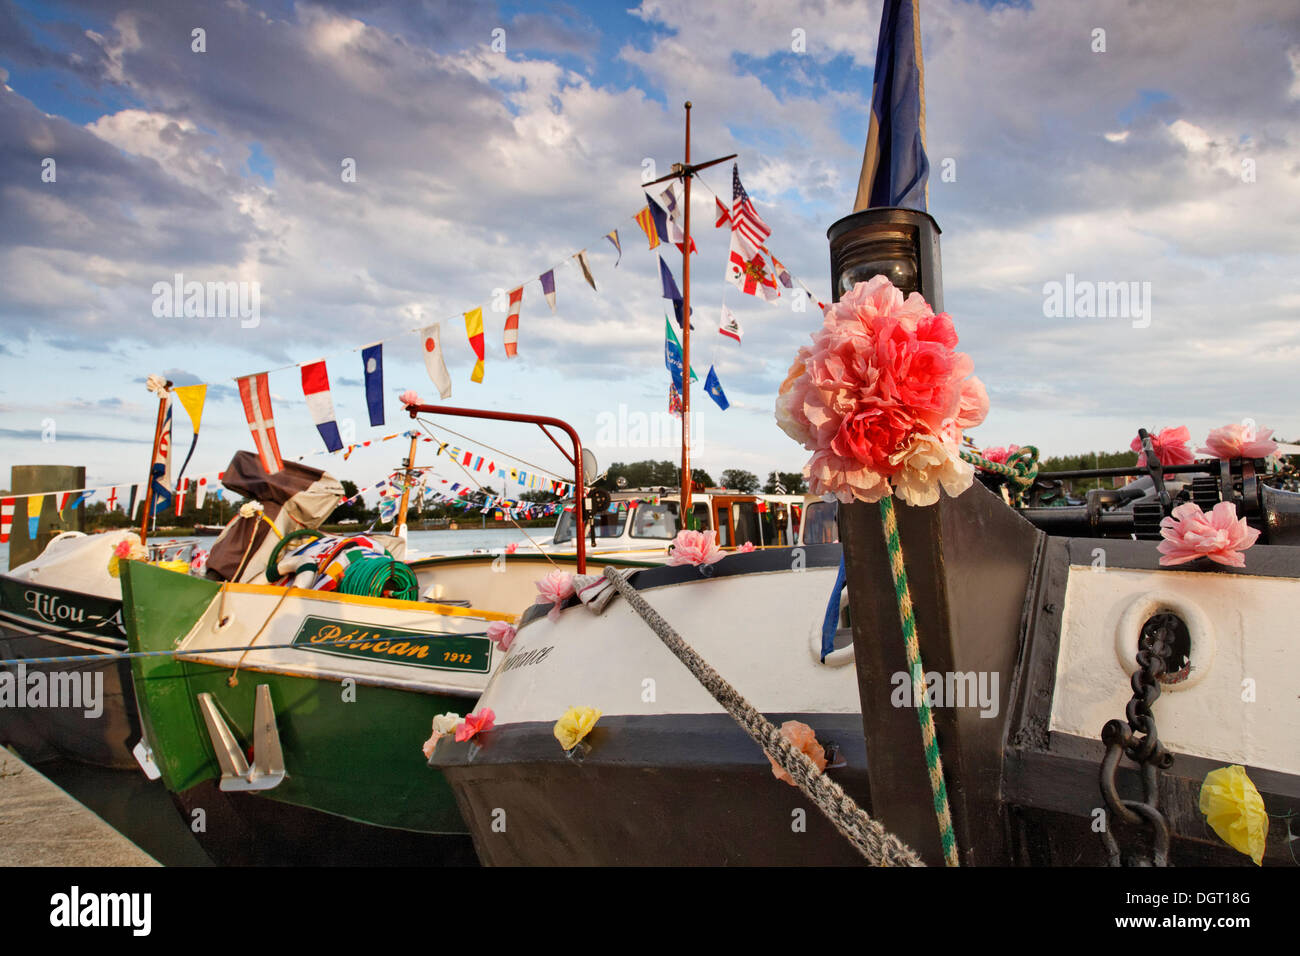 Boote für die 42. Pardon de Marines, Wallfahrt der Schiffer auf der Saône und seine Ufer, Saint-Jean-de-Losne dekoriert Stockfoto